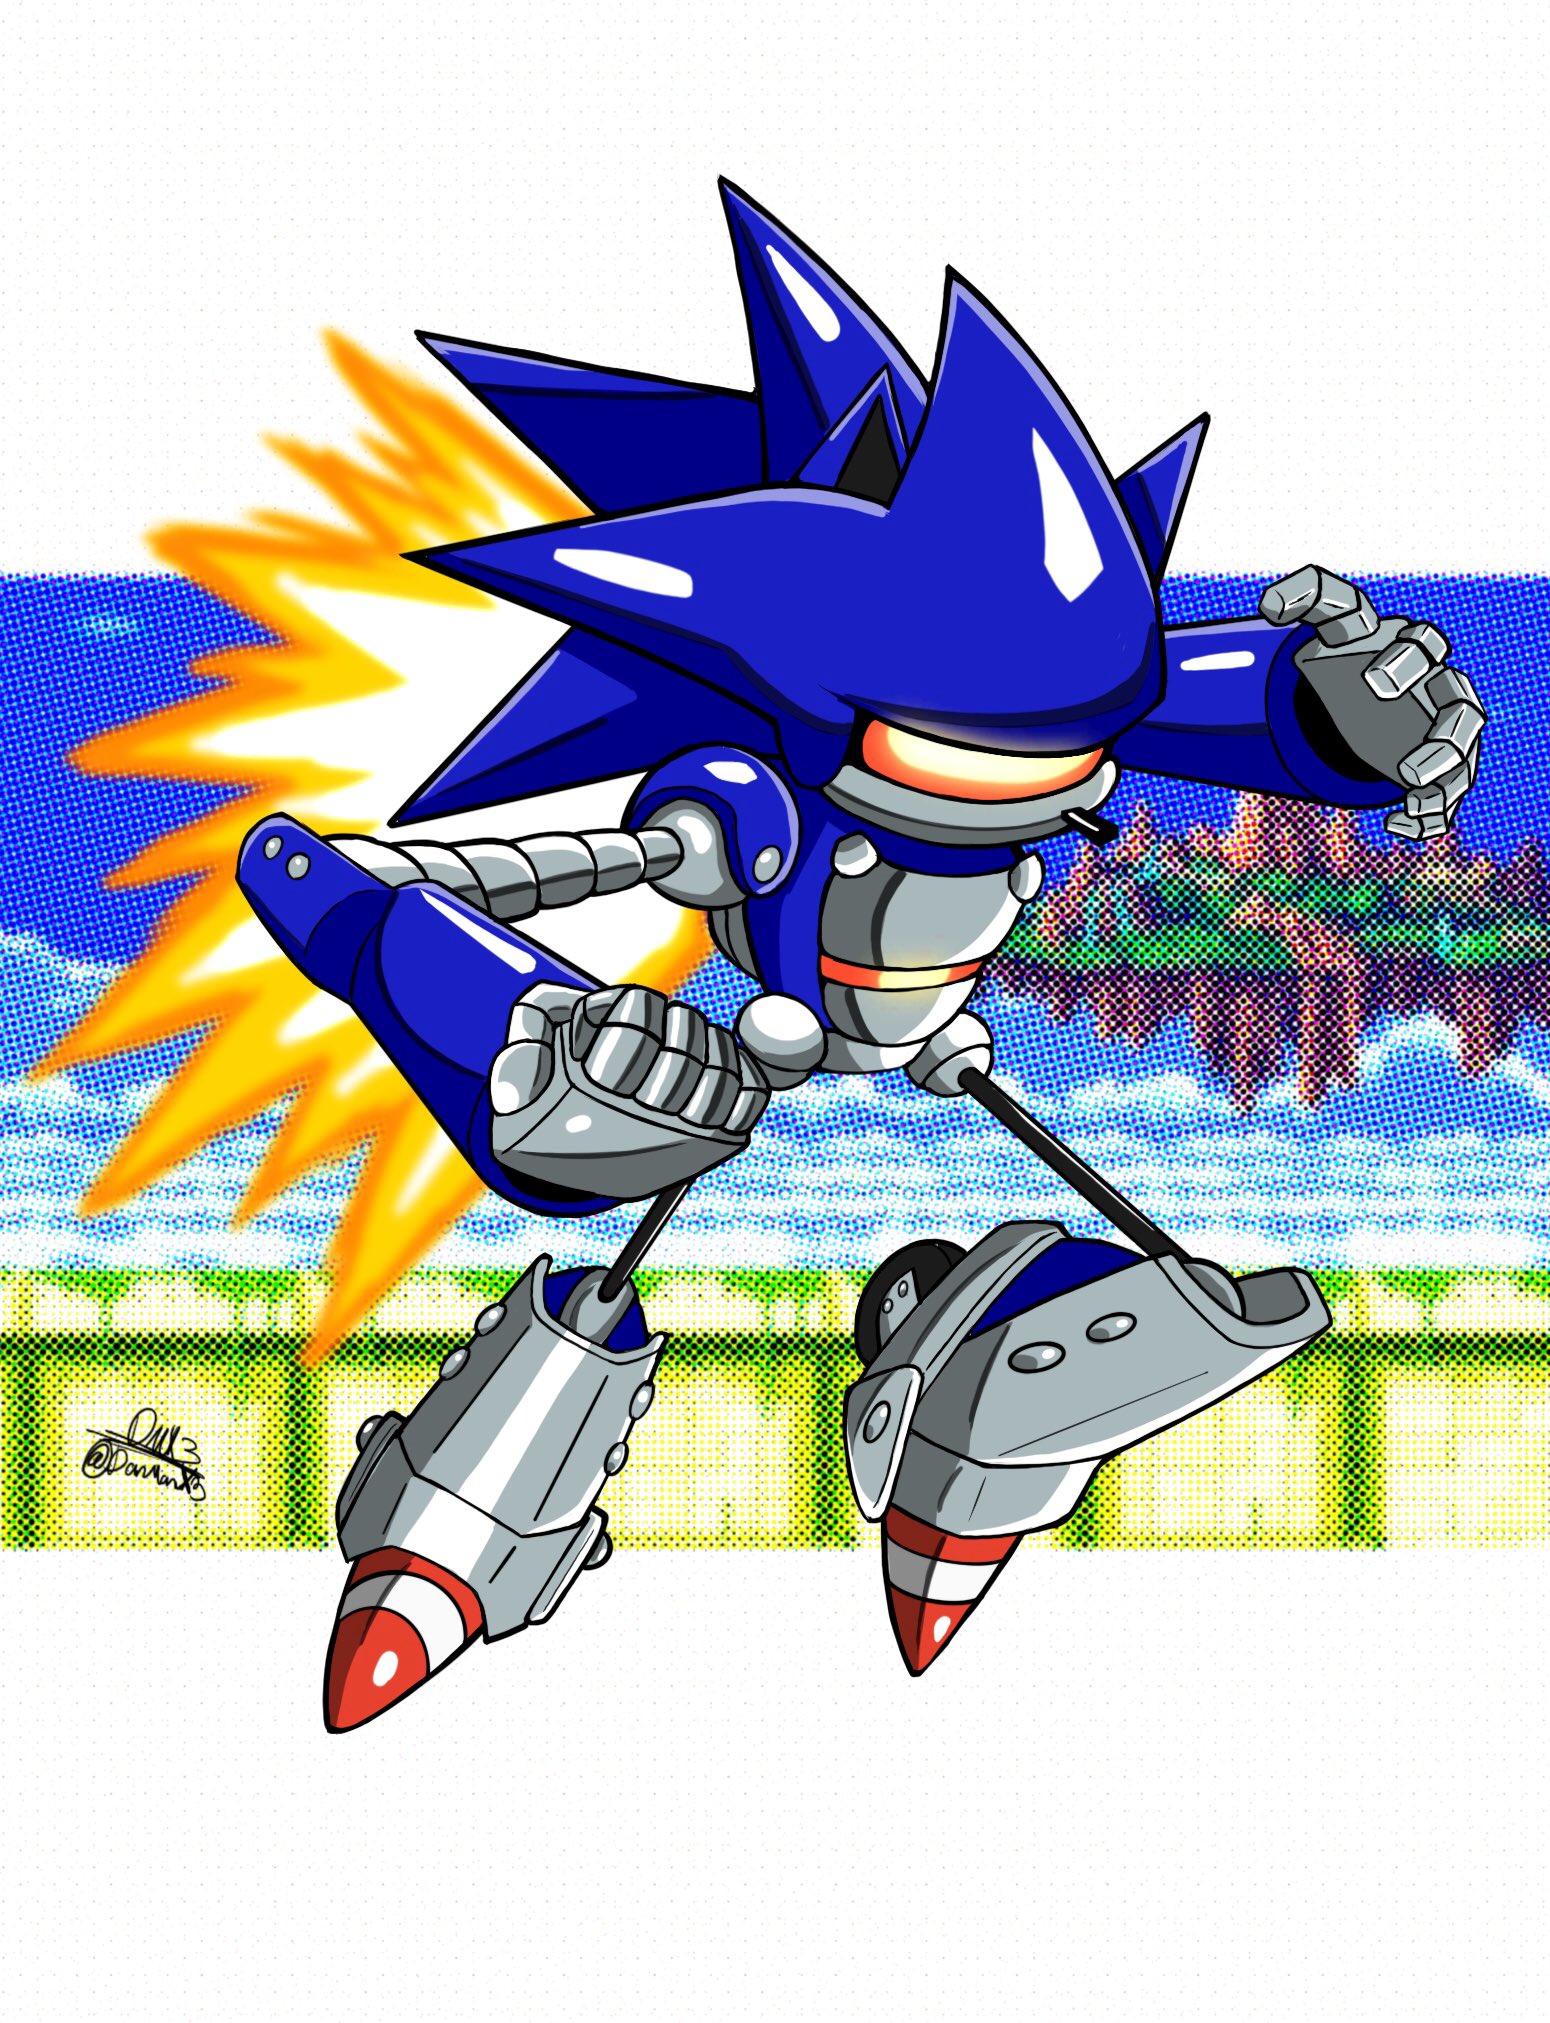 DanManX على X: Mecha Sonic is awesome #SonicTheHedgehog #Sonic #SMBZ  #MechaSonic #sonicfanart  / X